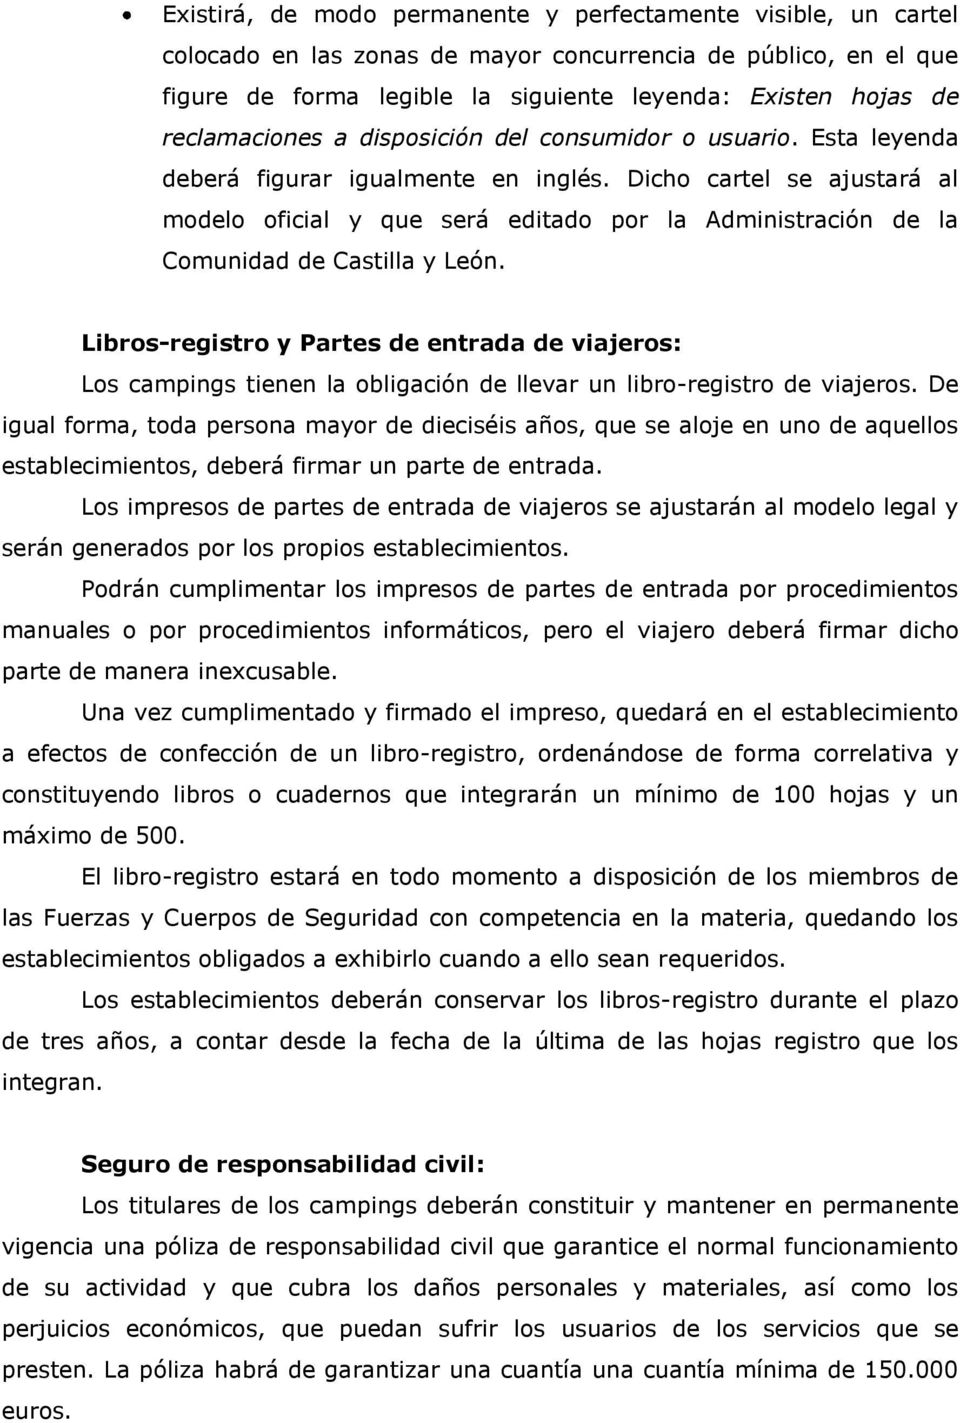 Dicho cartel se ajustará al modelo oficial y que será editado por la Administración de la Comunidad de Castilla y León.